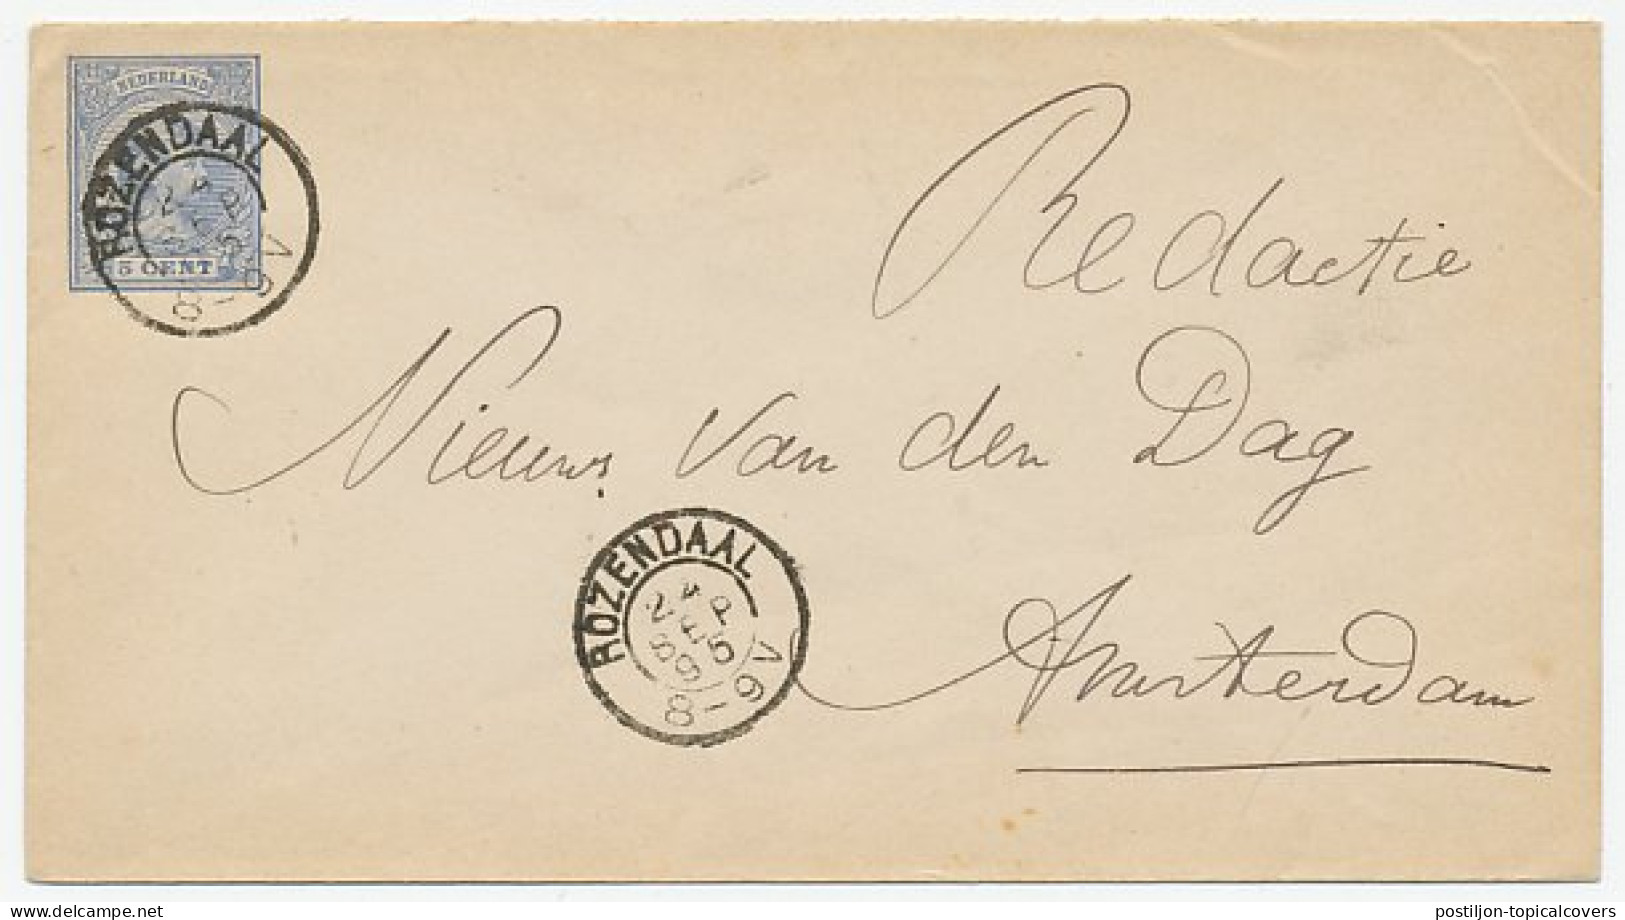 Envelop G. 5 Rozendaal - Amsterdam 1895 - Ganzsachen